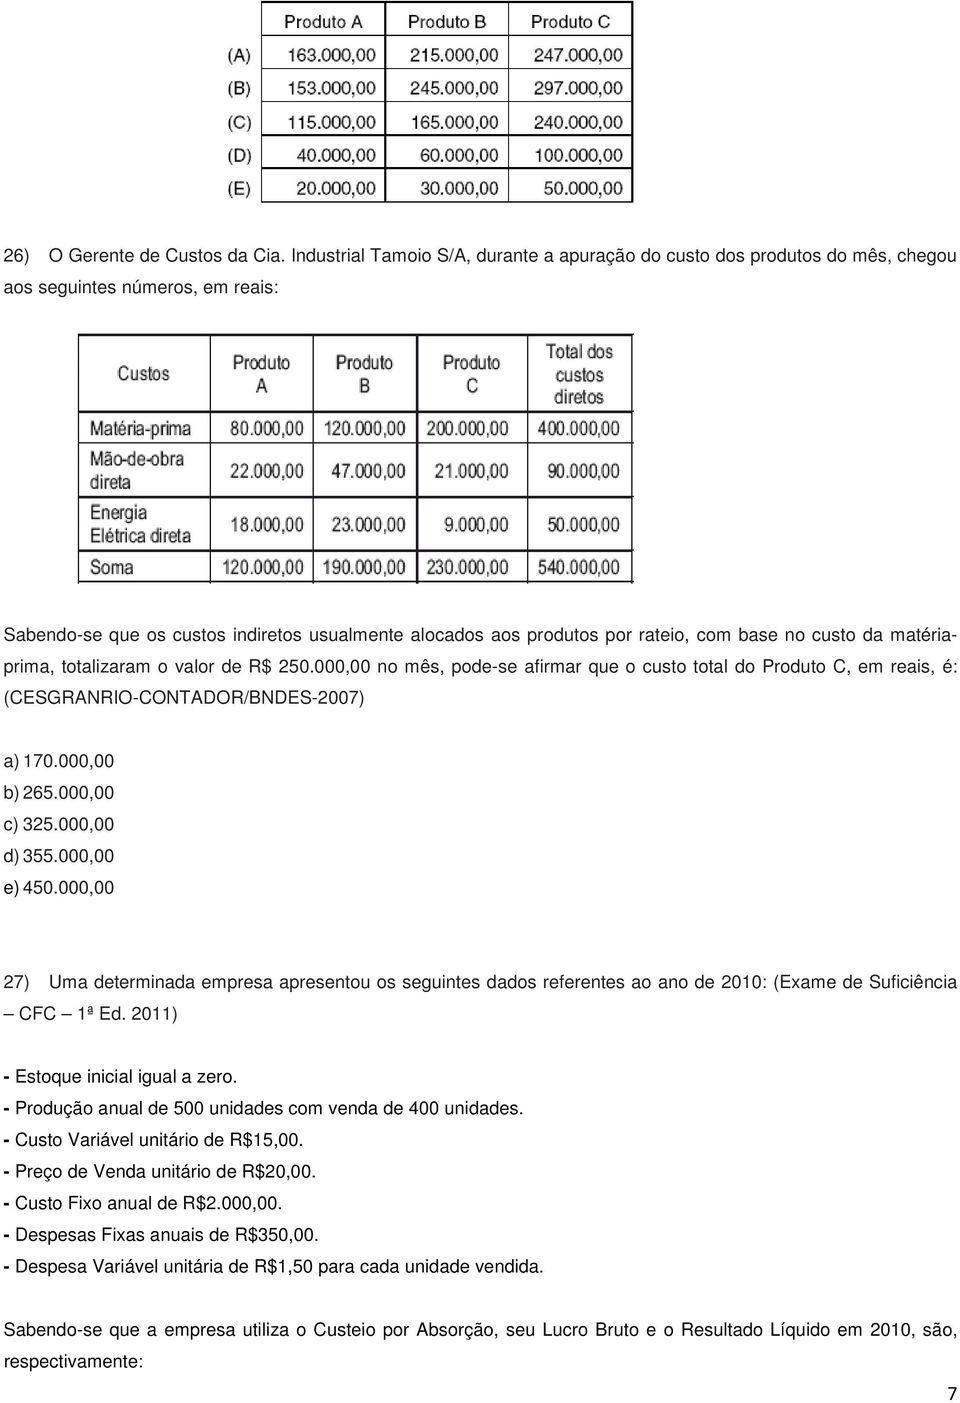 base no custo da matériaprima, totalizaram o valor de R$ 250.000,00 no mês, pode-se afirmar que o custo total do Produto C, em reais, é: (CESGRANRIO-CONTADOR/BNDES-2007) a) 170.000,00 b) 265.